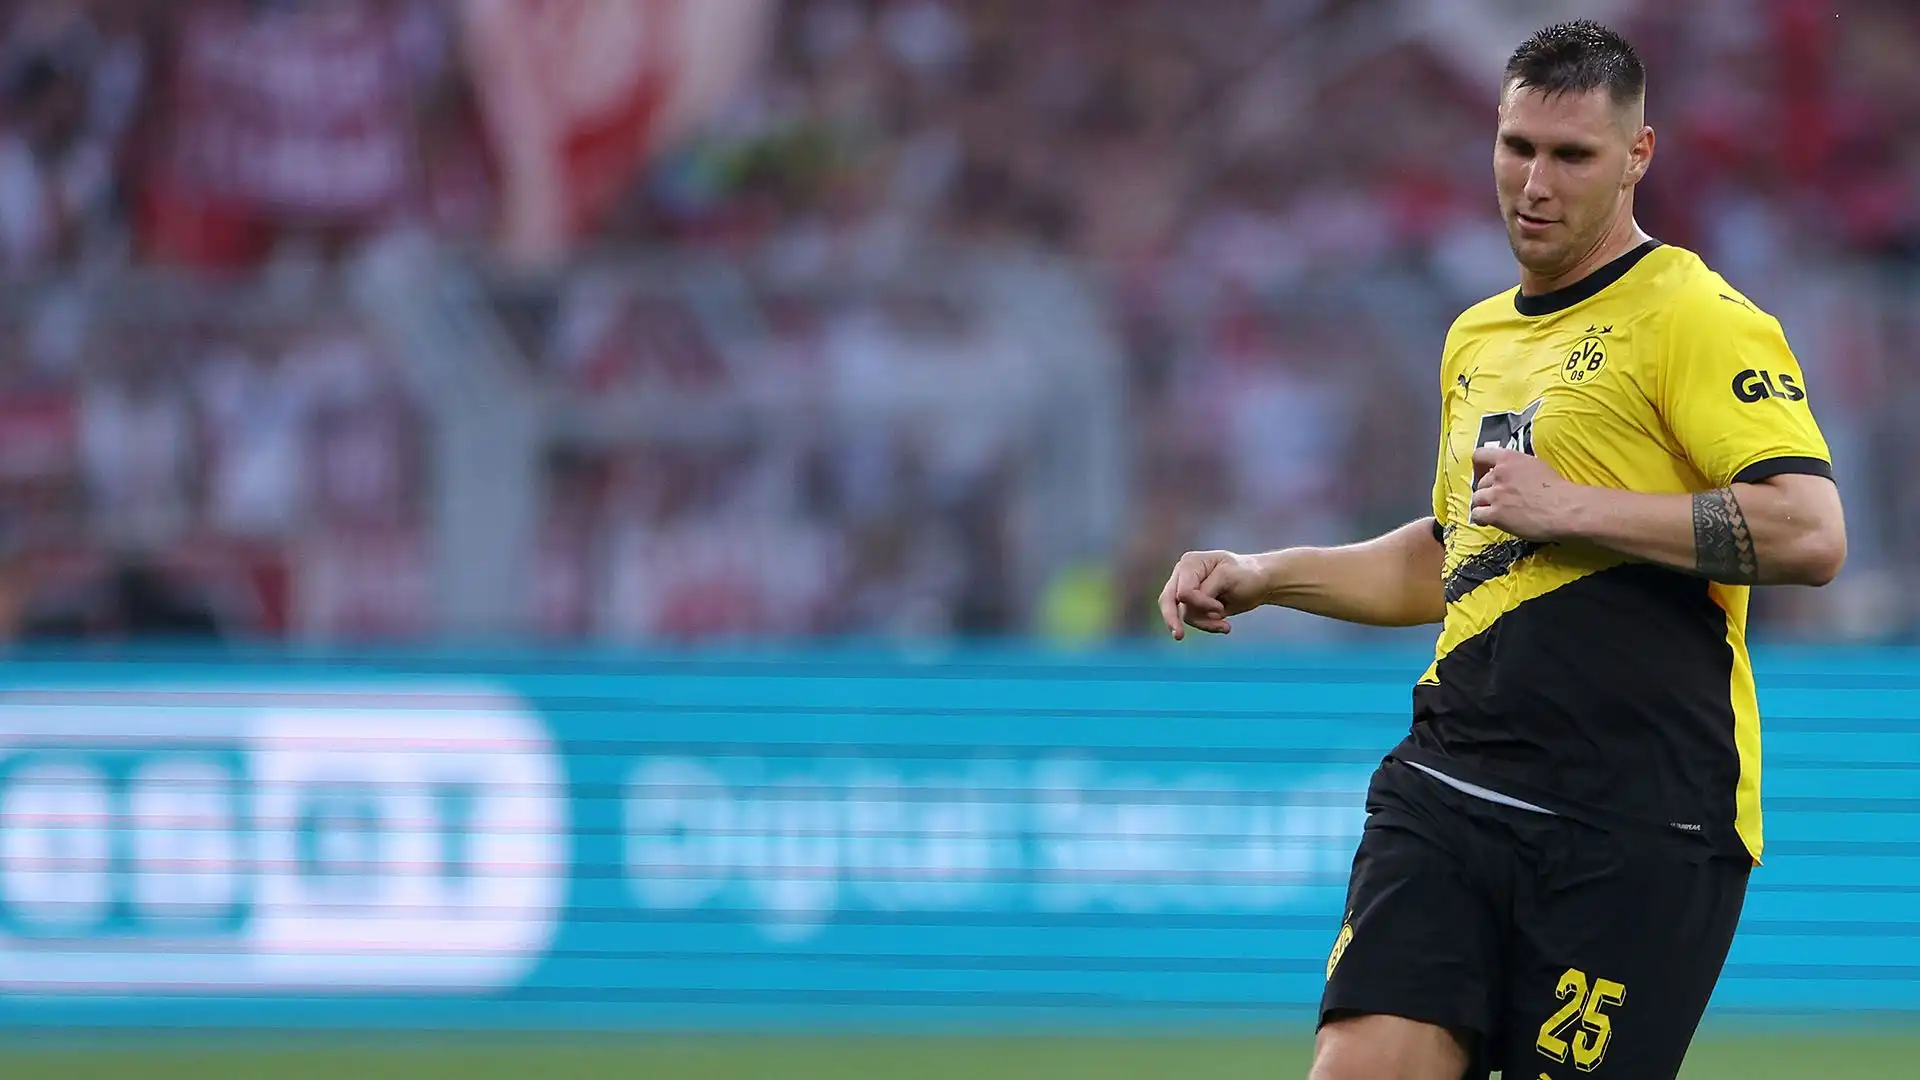 Nonostante gli ultimi mesi, Süle resta un difensore solido e affidabile